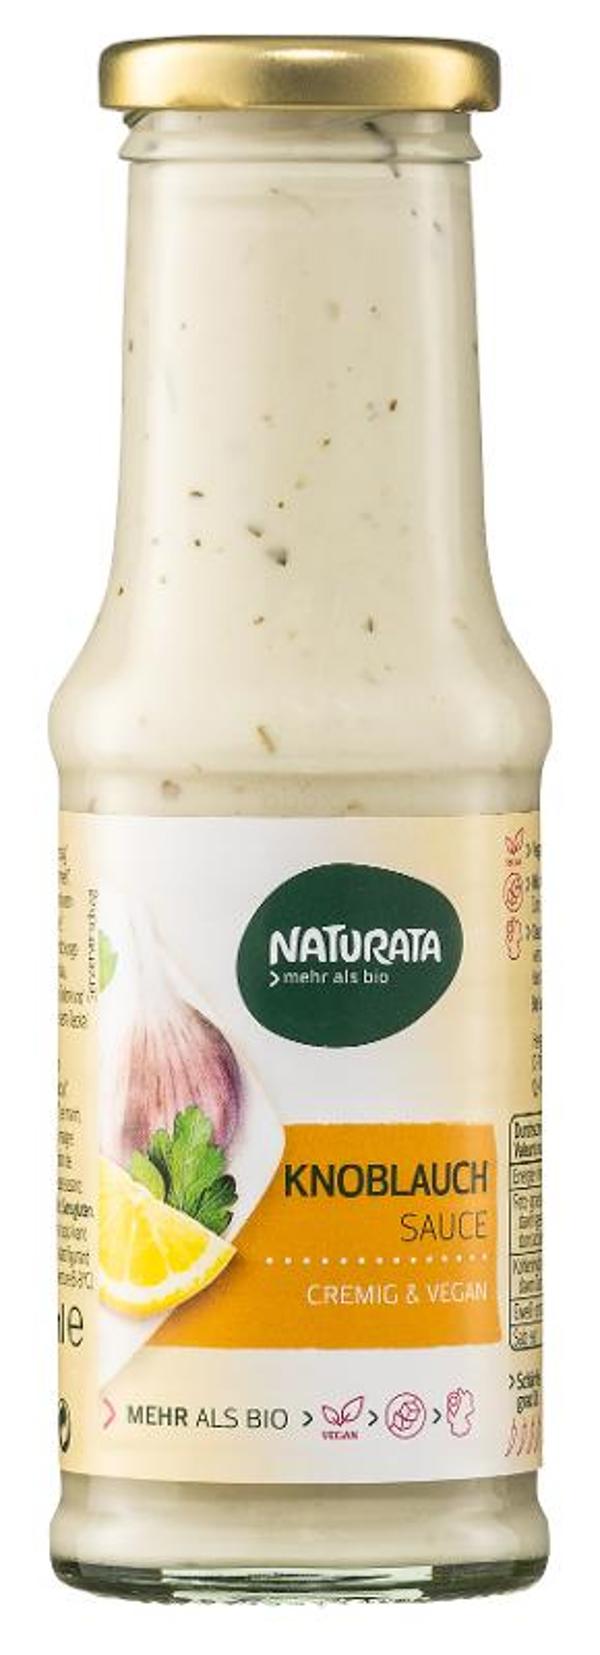 Produktfoto zu Naturata Knoblauch Sauce - 210ml